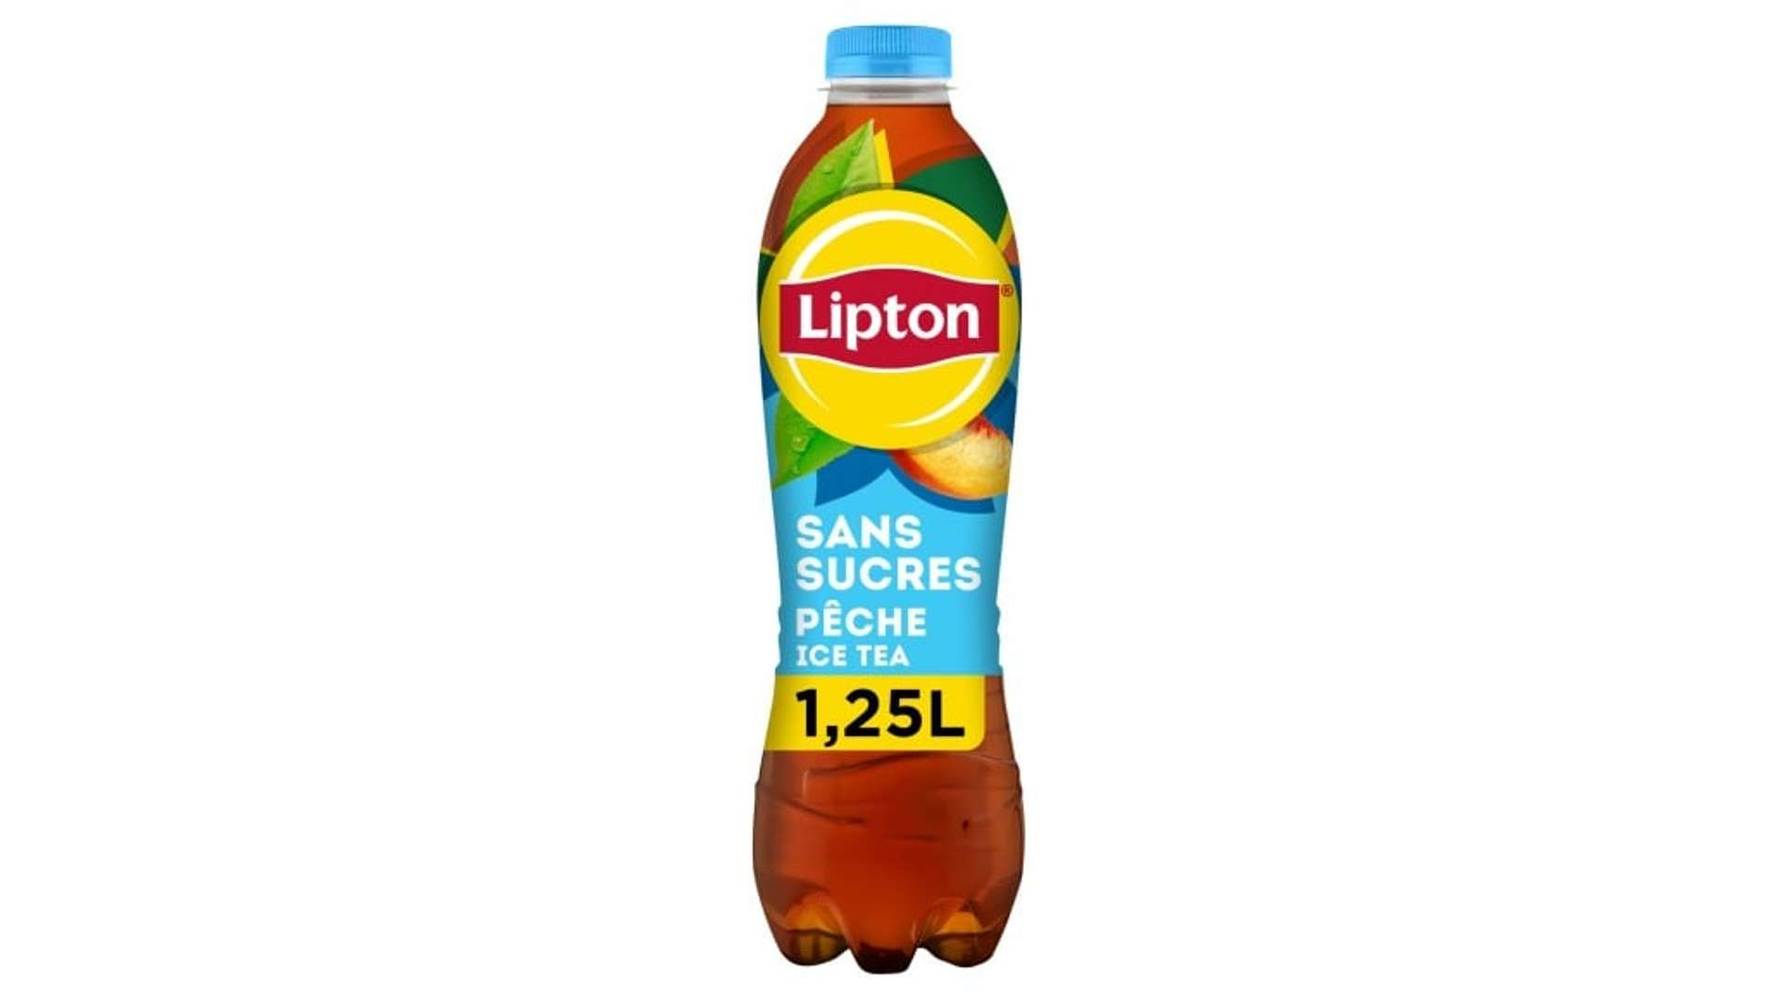 Lipton - Boisson au thé saveur pêche sans sucres (1250 ml)